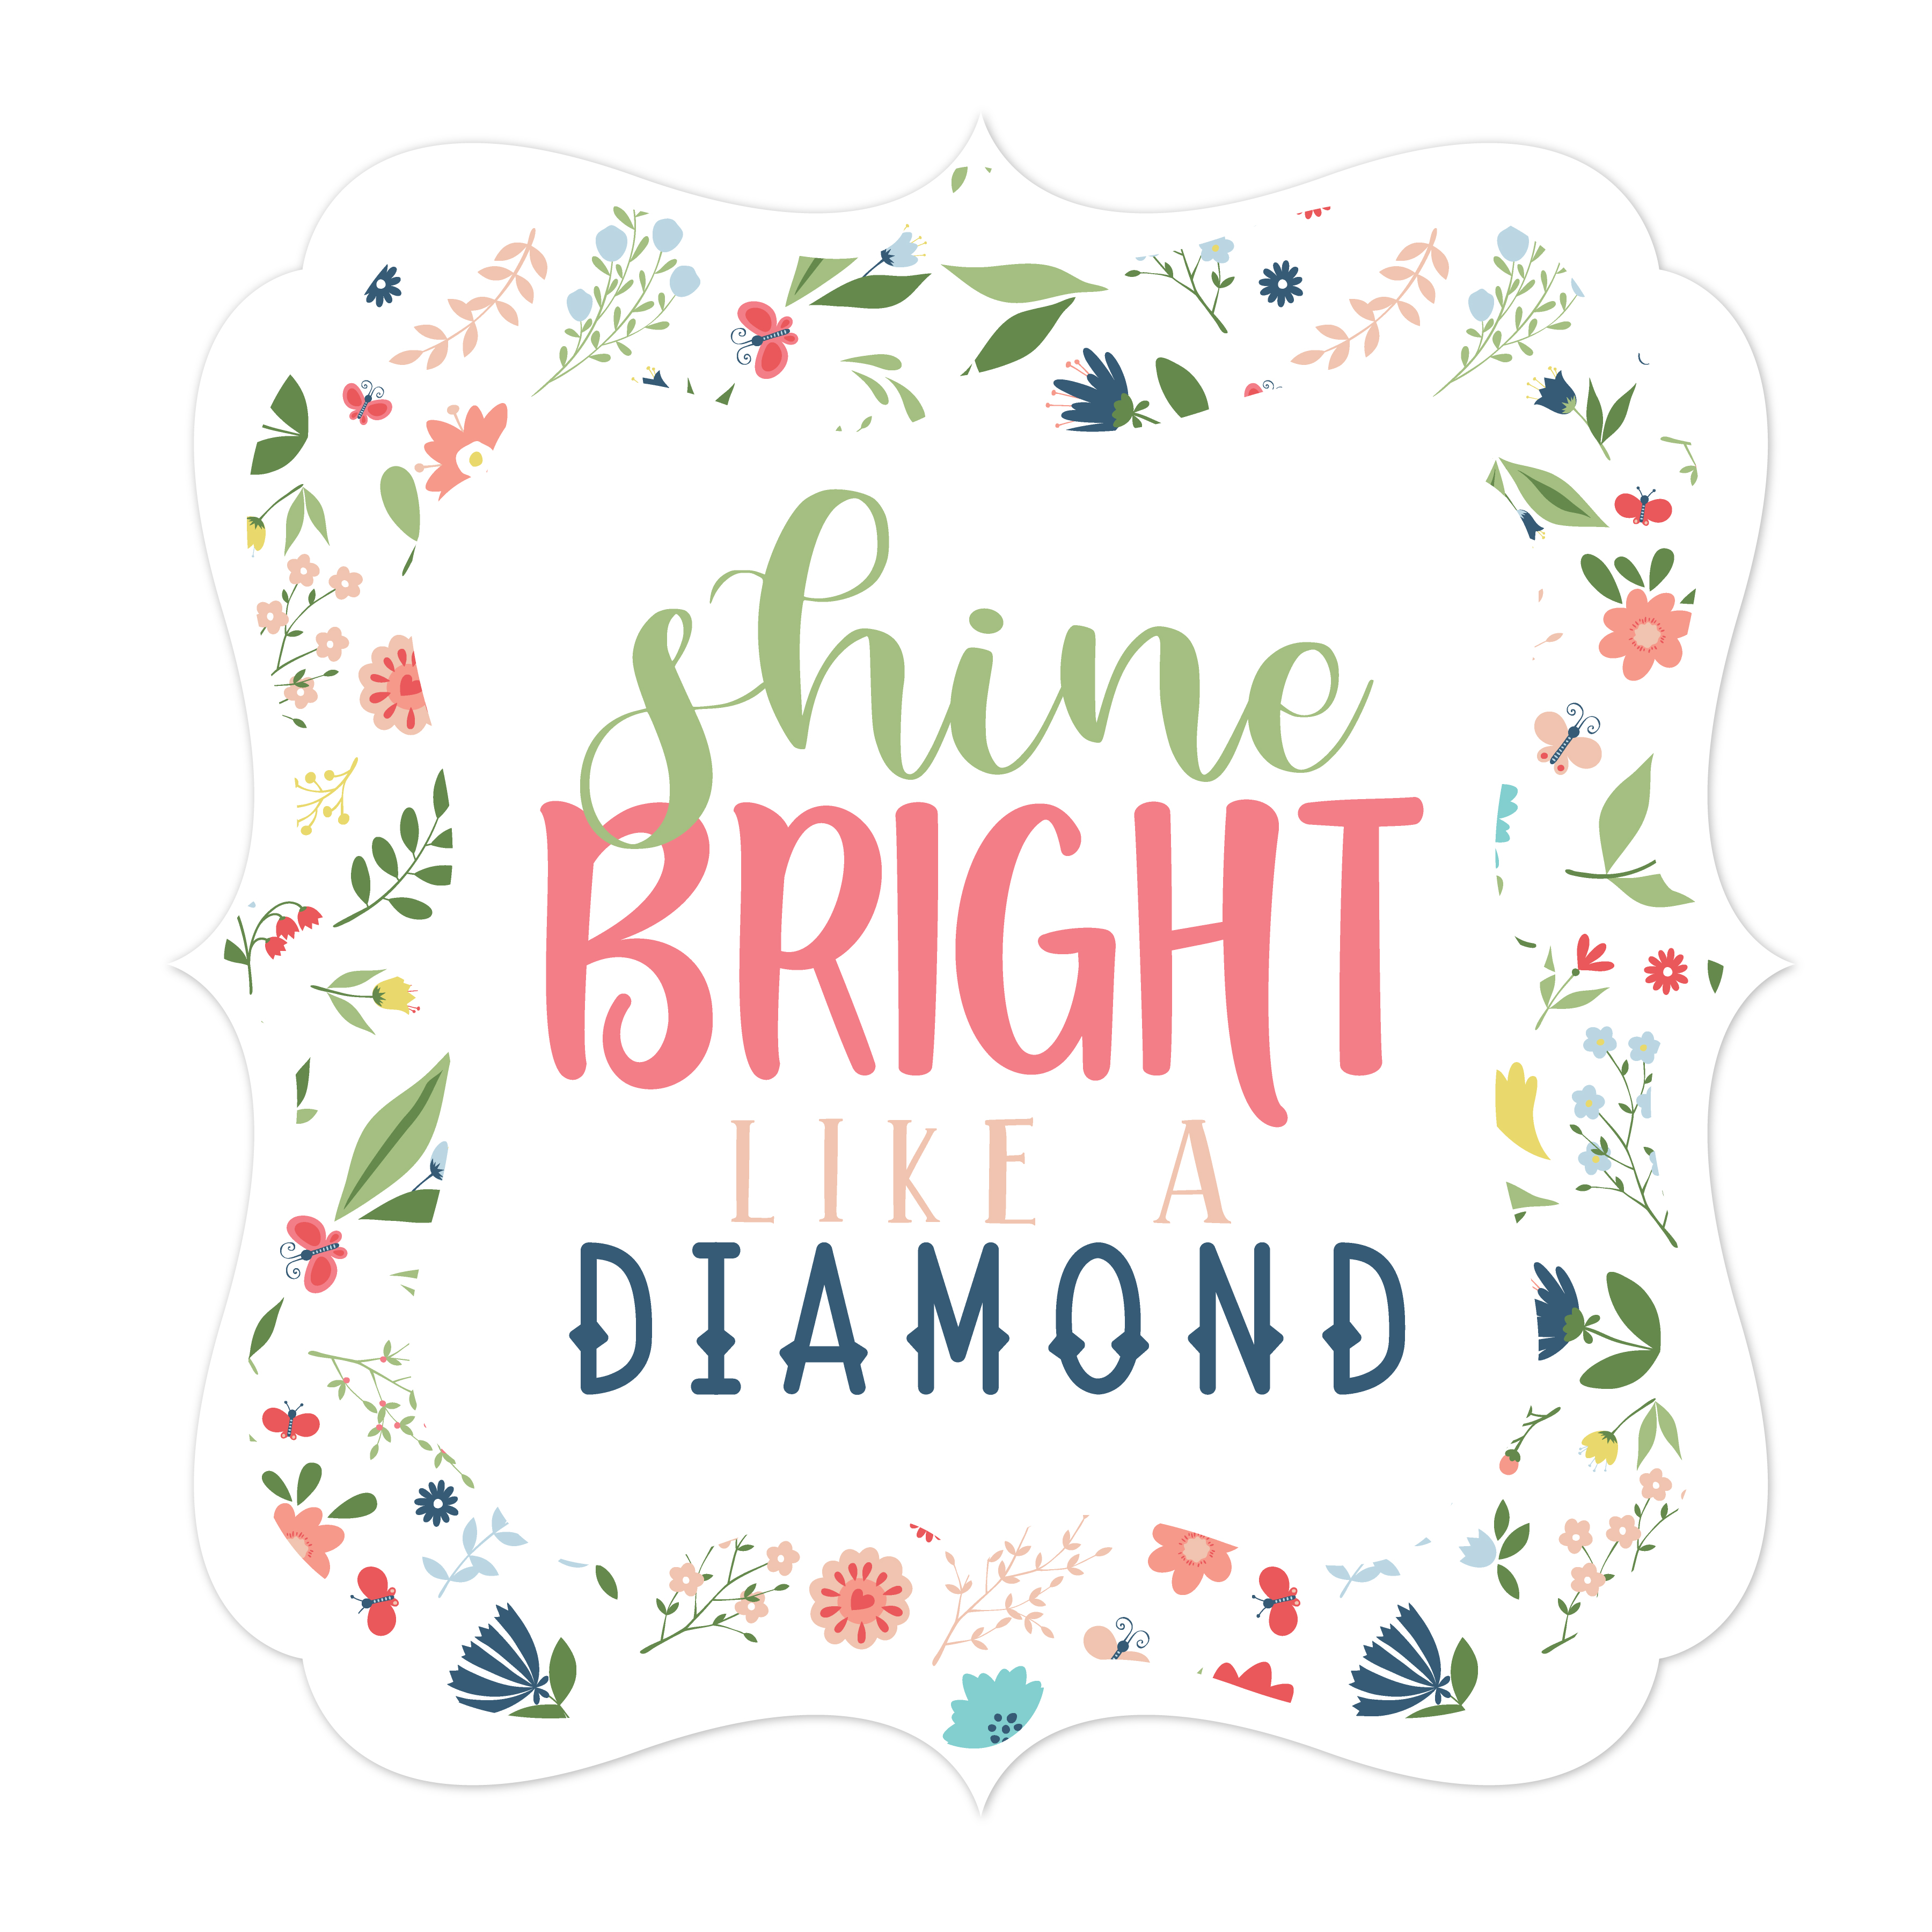 Shine Bright Print And Cut File